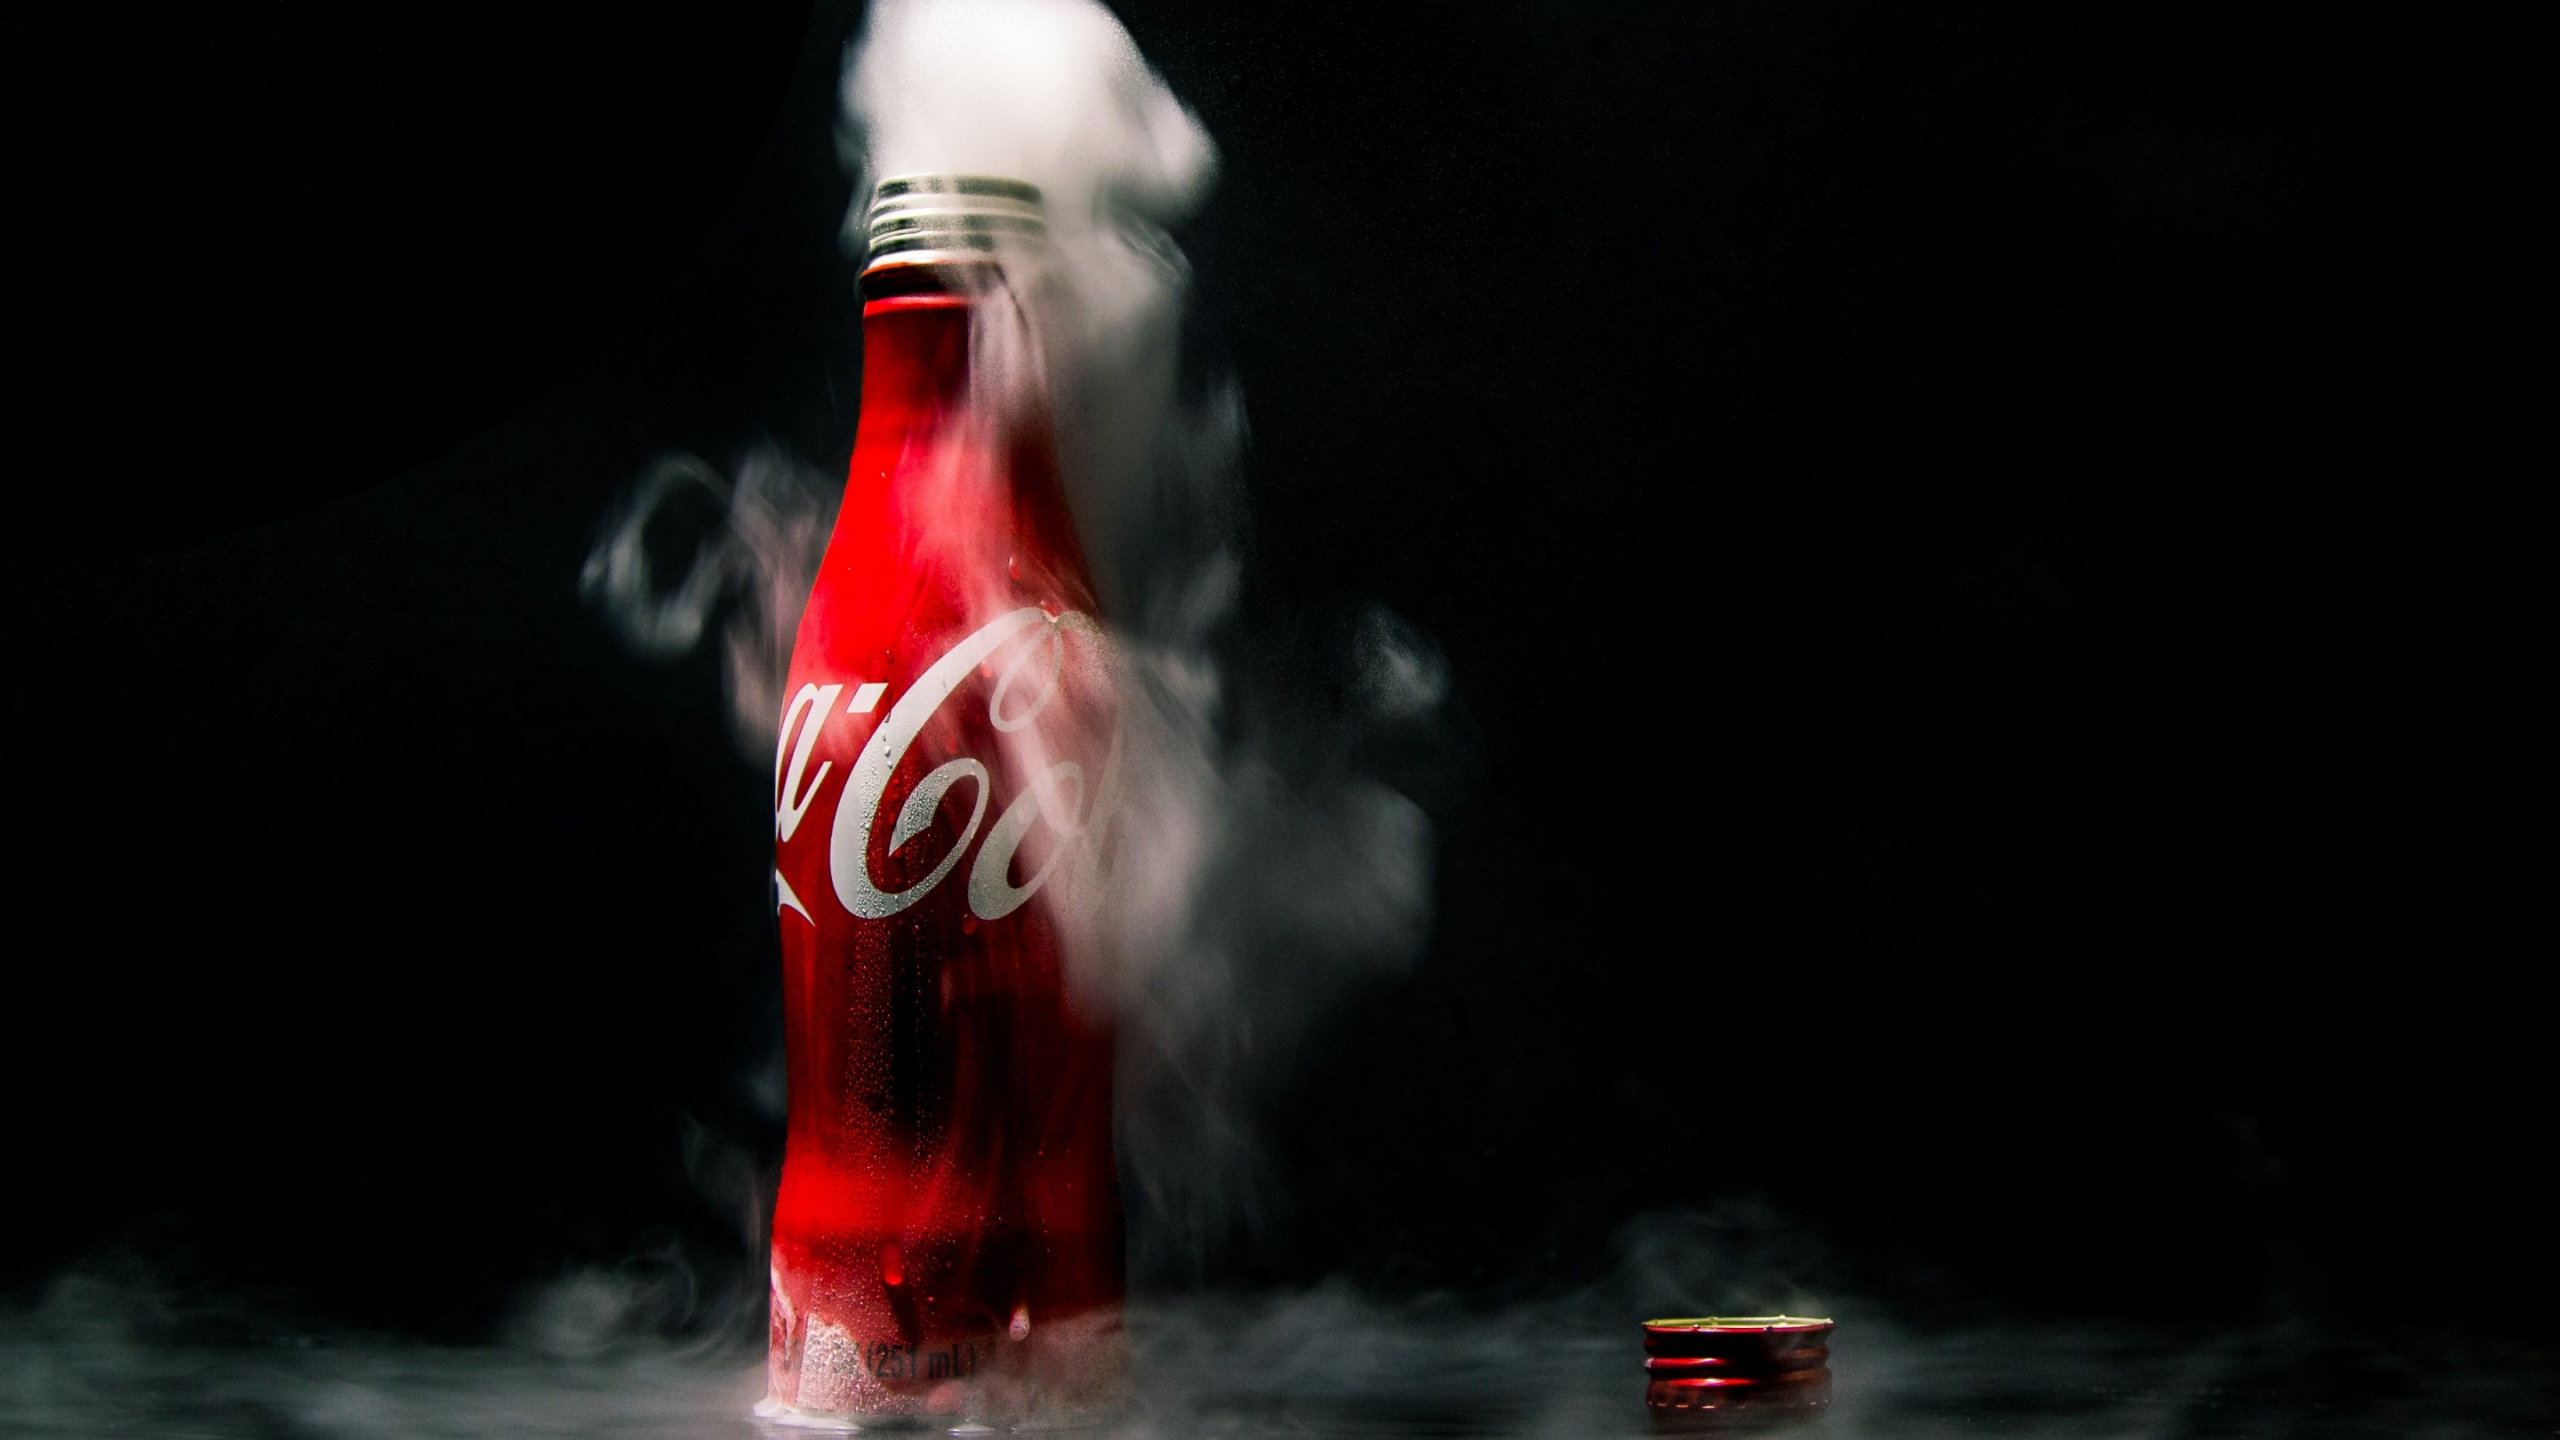 Coca-Cola-Flasche Auf Wasser. Wallpaper in 2560x1440 Resolution